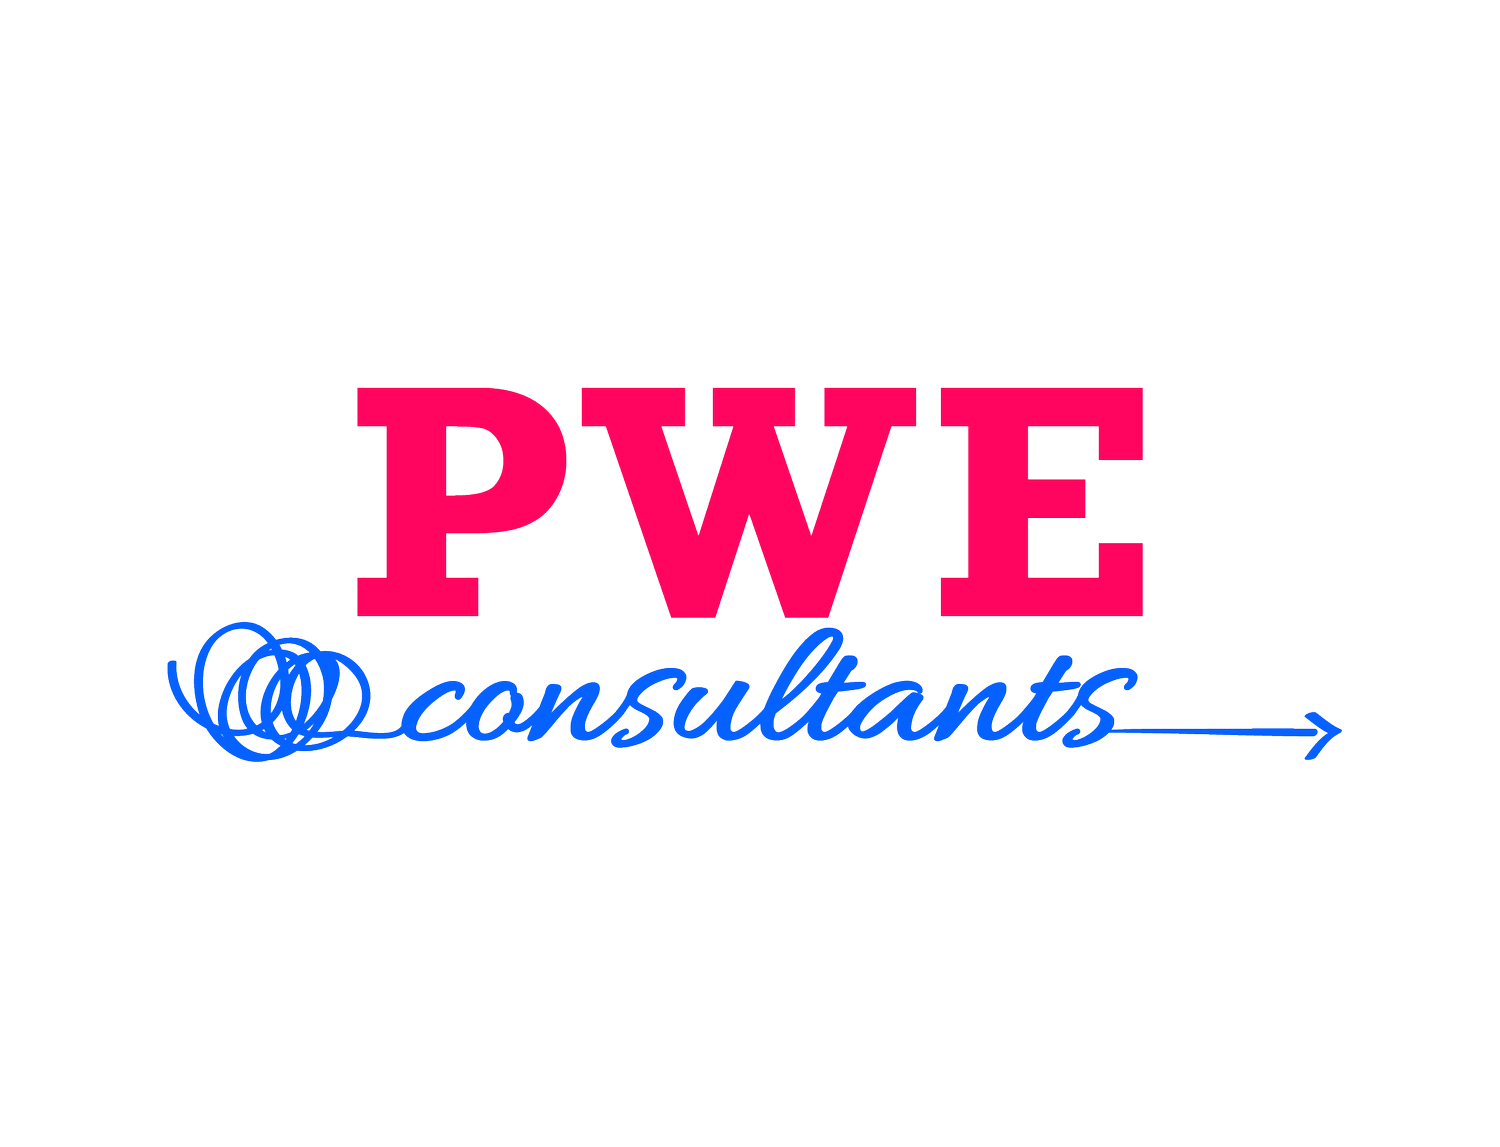 PWE Consultants